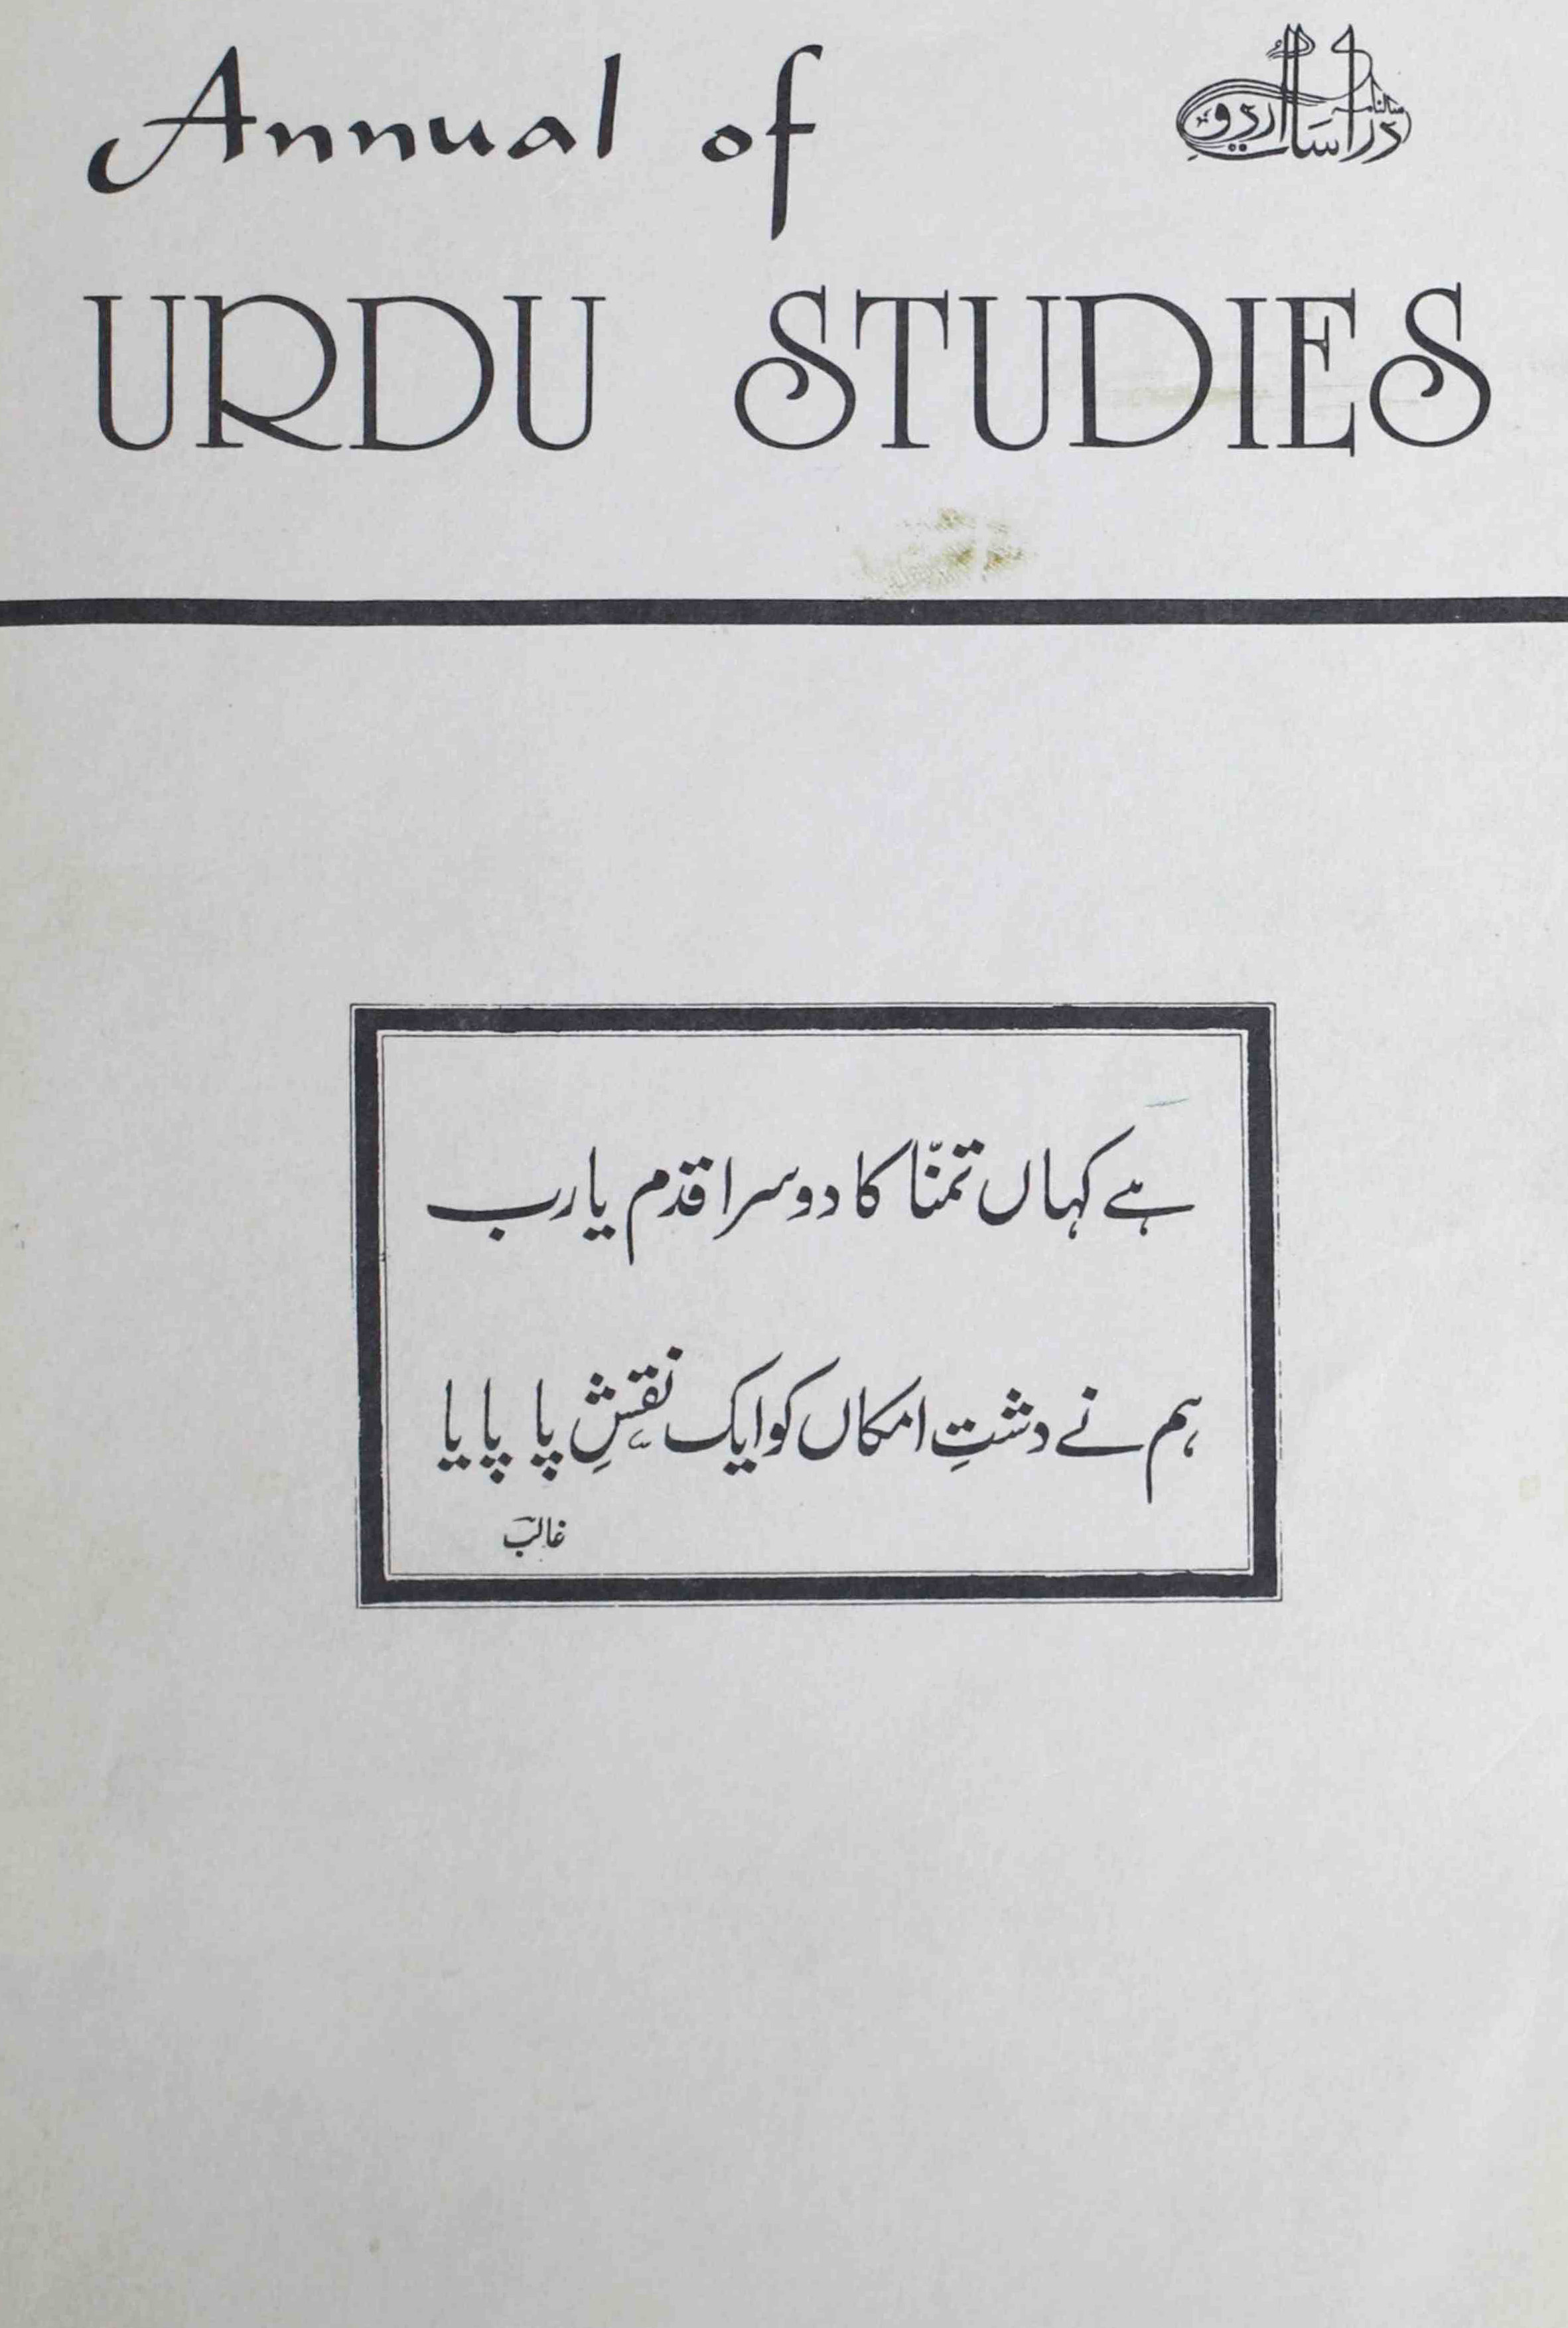 दी एनुवल आफॅ़ उर्दू स्टडीज़